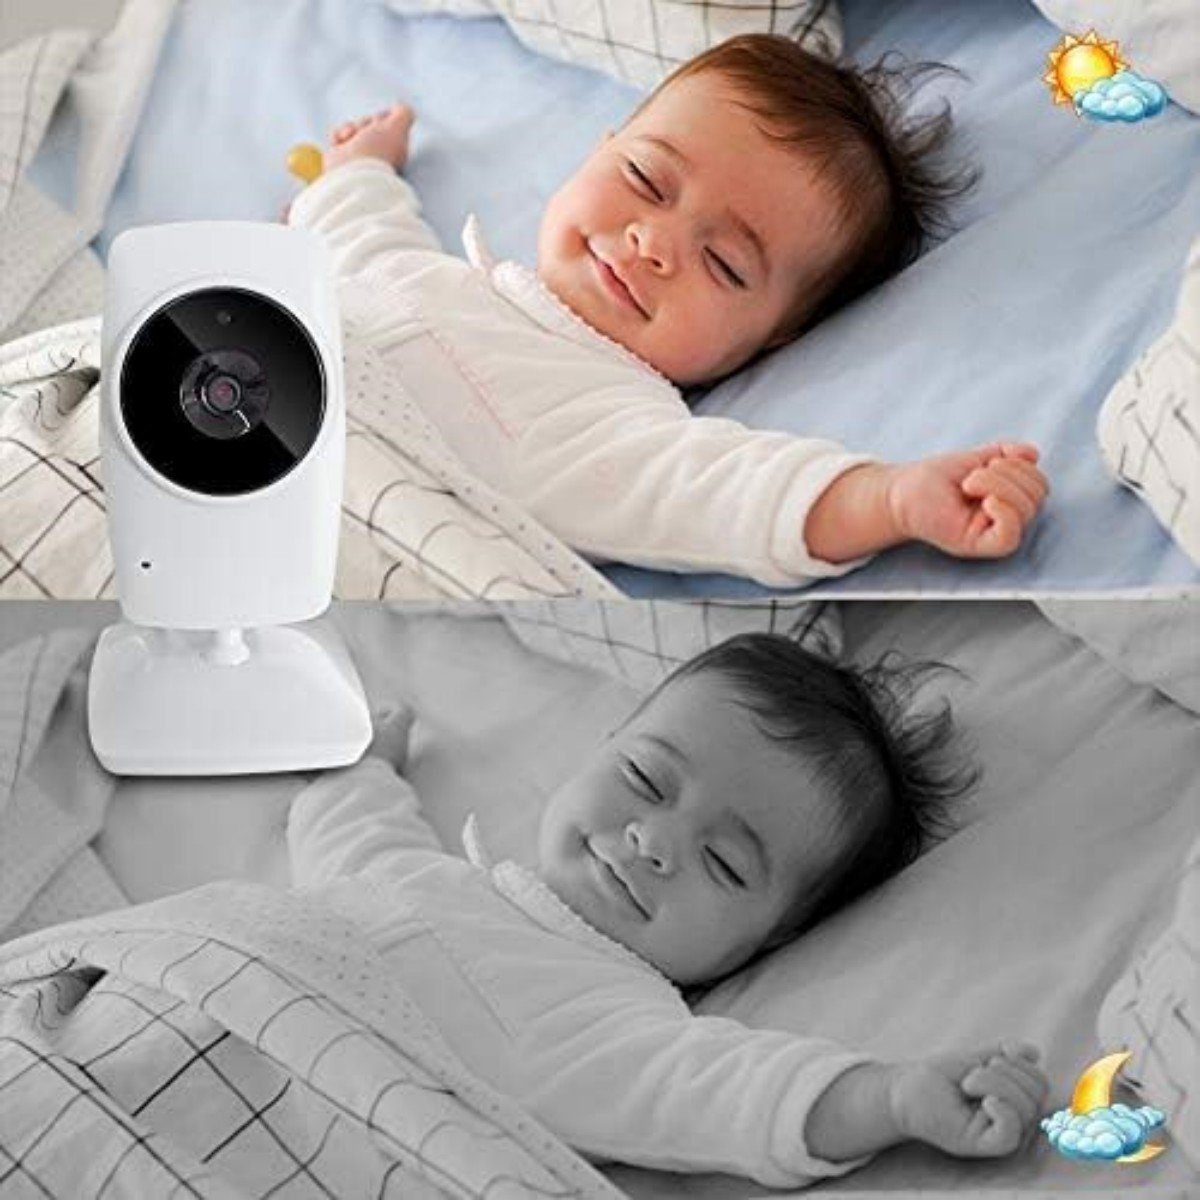 Monitor 2,4 GHz Video, Babyphone Baby Kamera mit Gegensprechfunktion, Nachtsicht Welikera